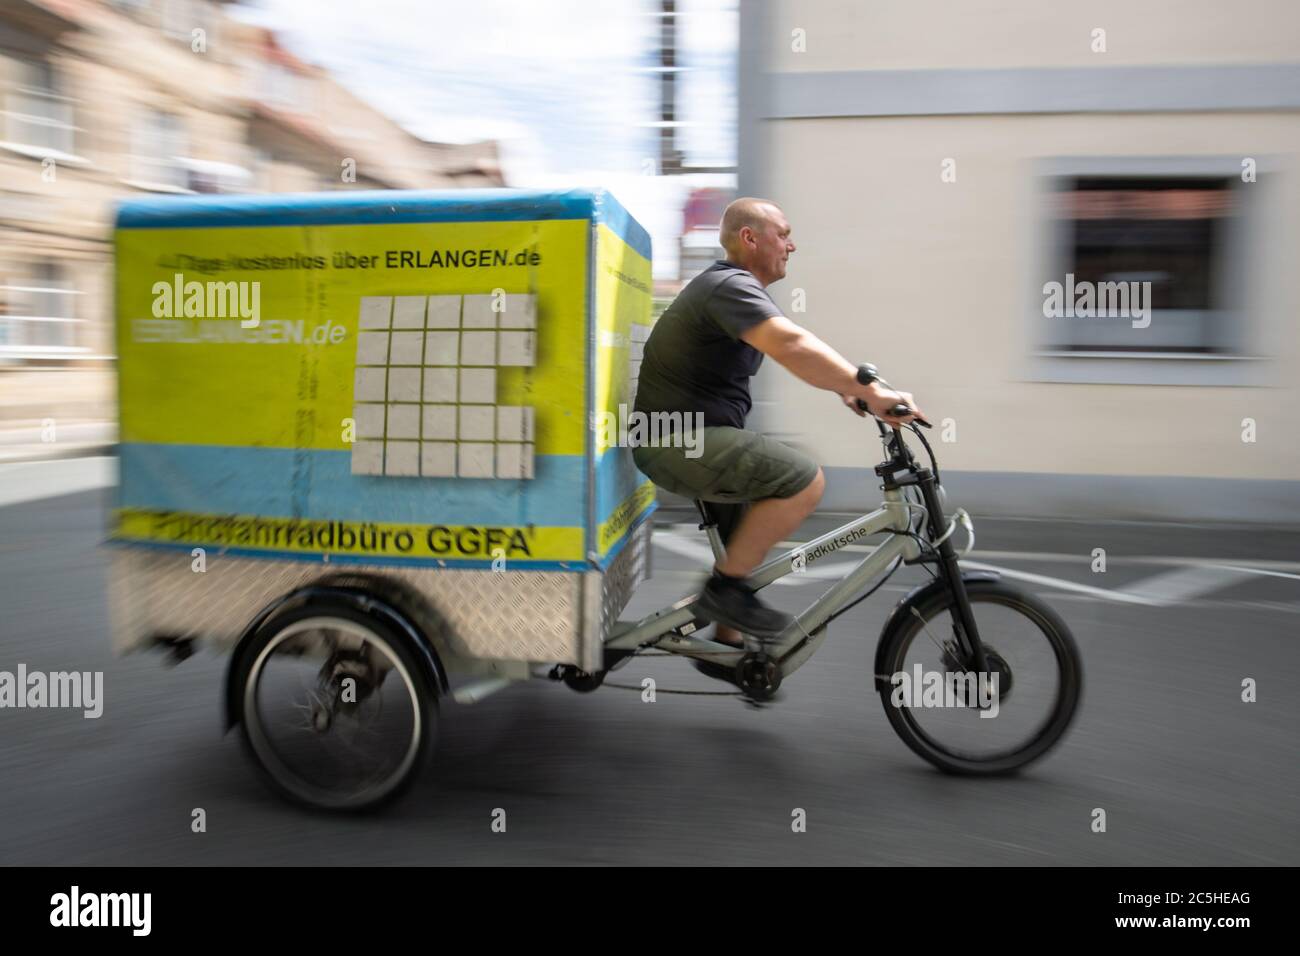 Nuremberg, Alemania. 30 de junio de 2020. Andreas Reisch de Cafe Hergricht,  una empresa de alquiler de bicicletas de transporte, se sienta en un  remolque de una bicicleta de carga eléctrica para la comparación de tamaño.  Se supone que las bicicletas ...